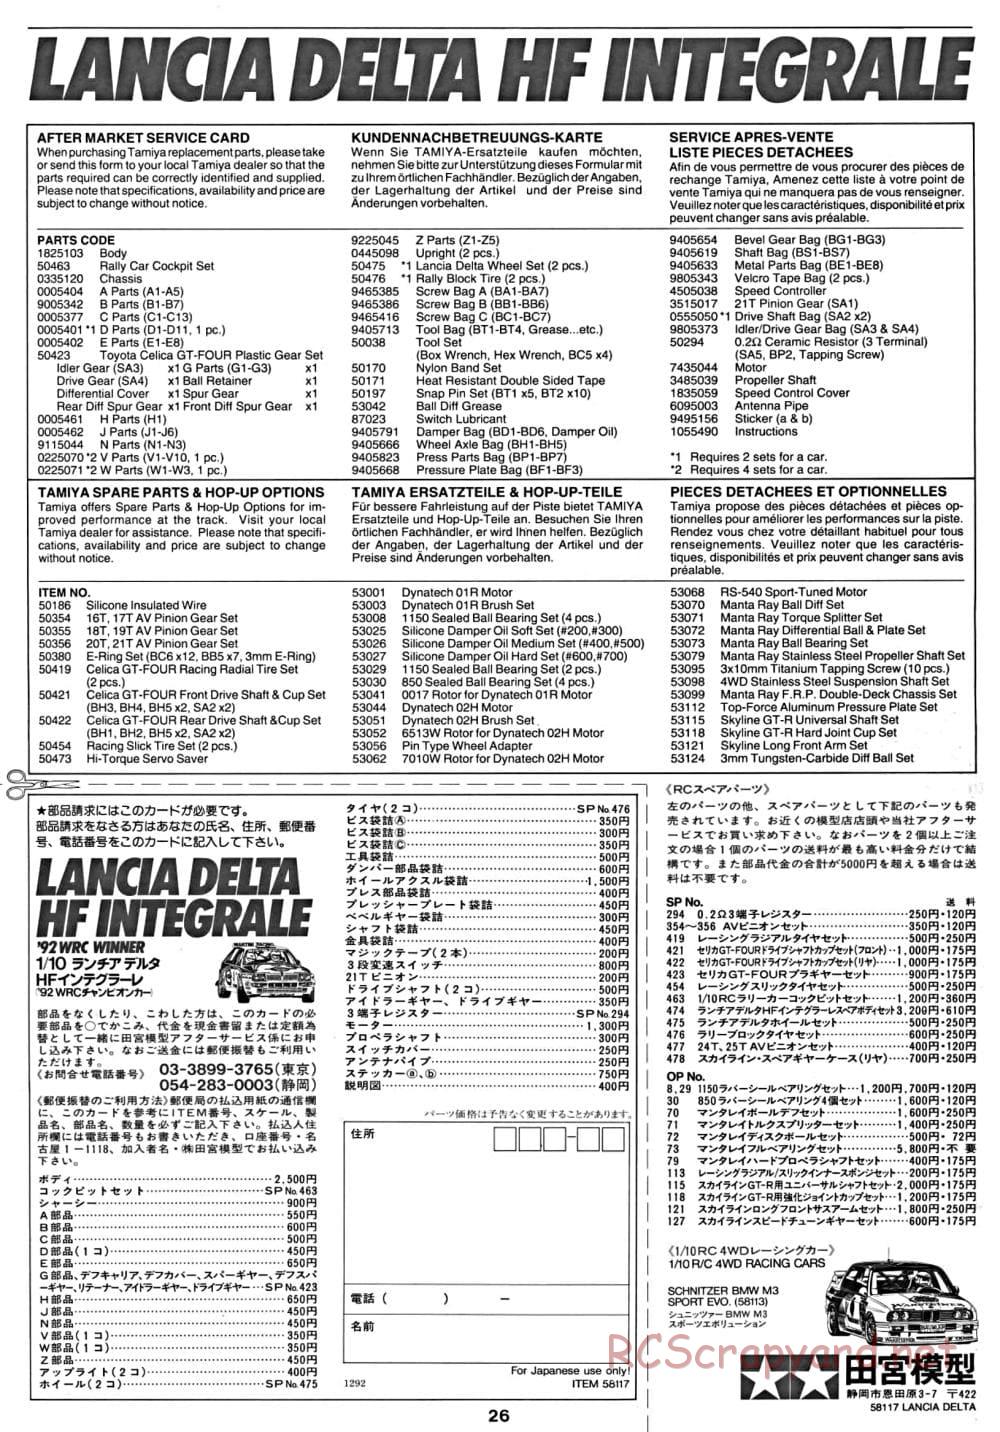 Tamiya - Lancia Delta HF Integrale - TA-01 Chassis - Manual - Page 27